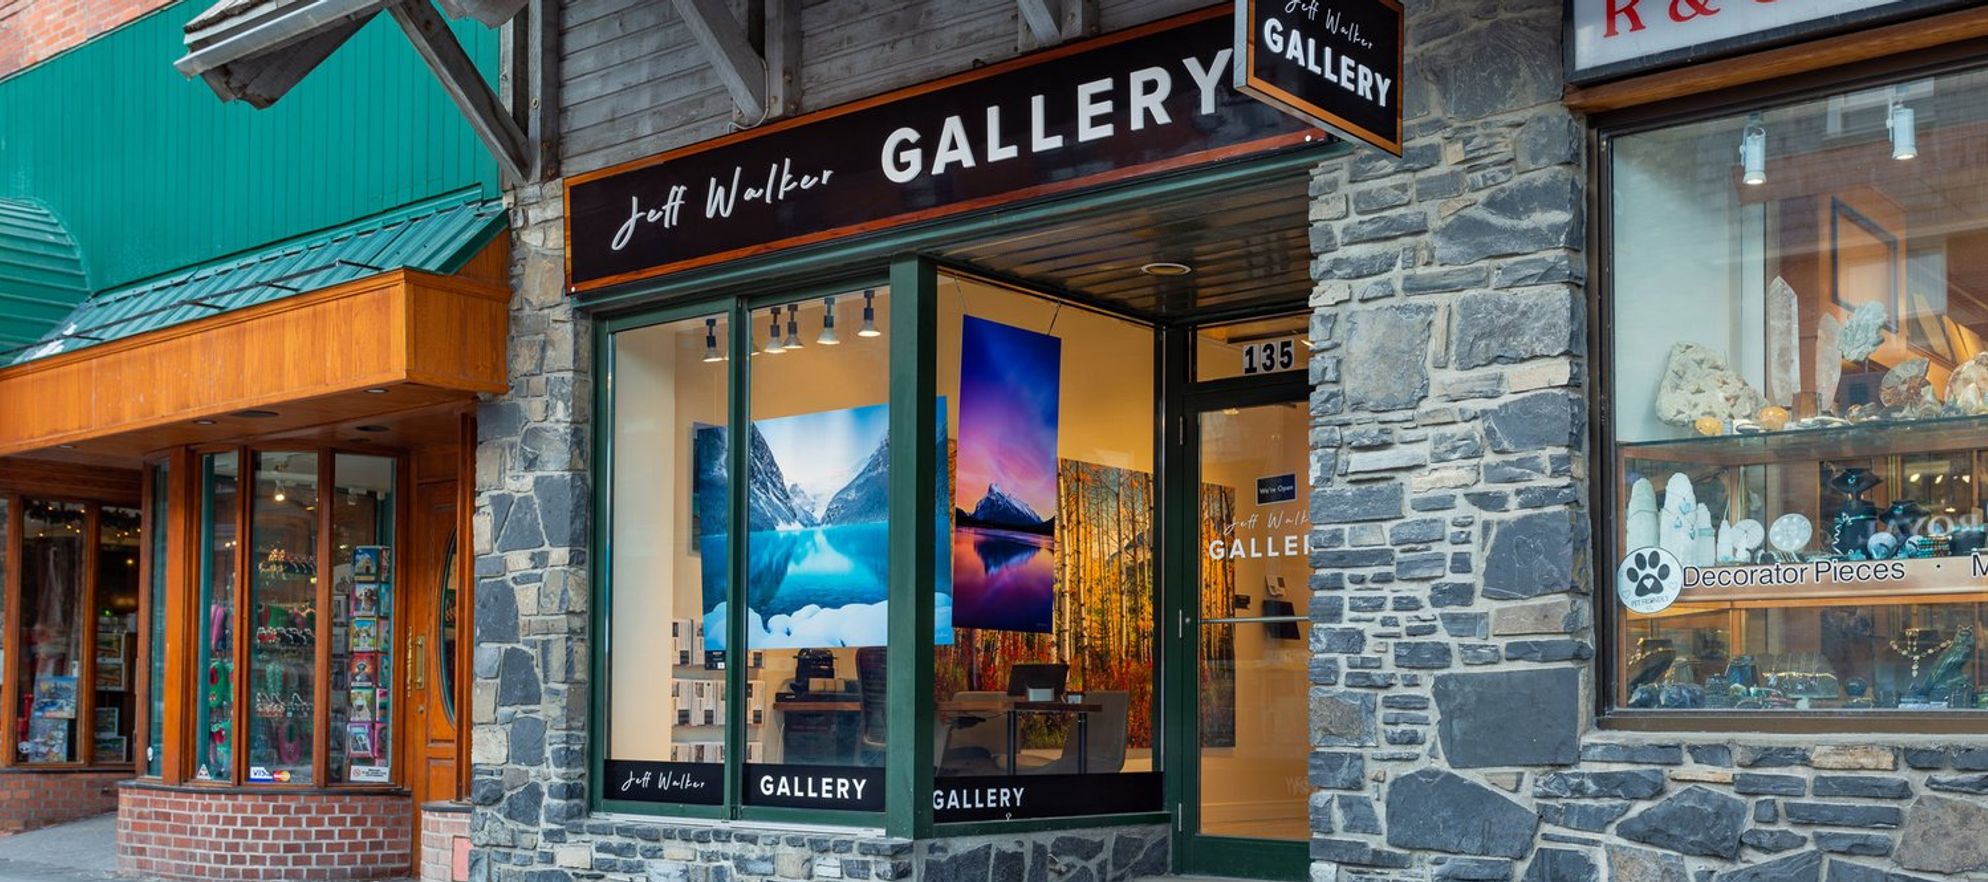 Jeff Walker Gallery